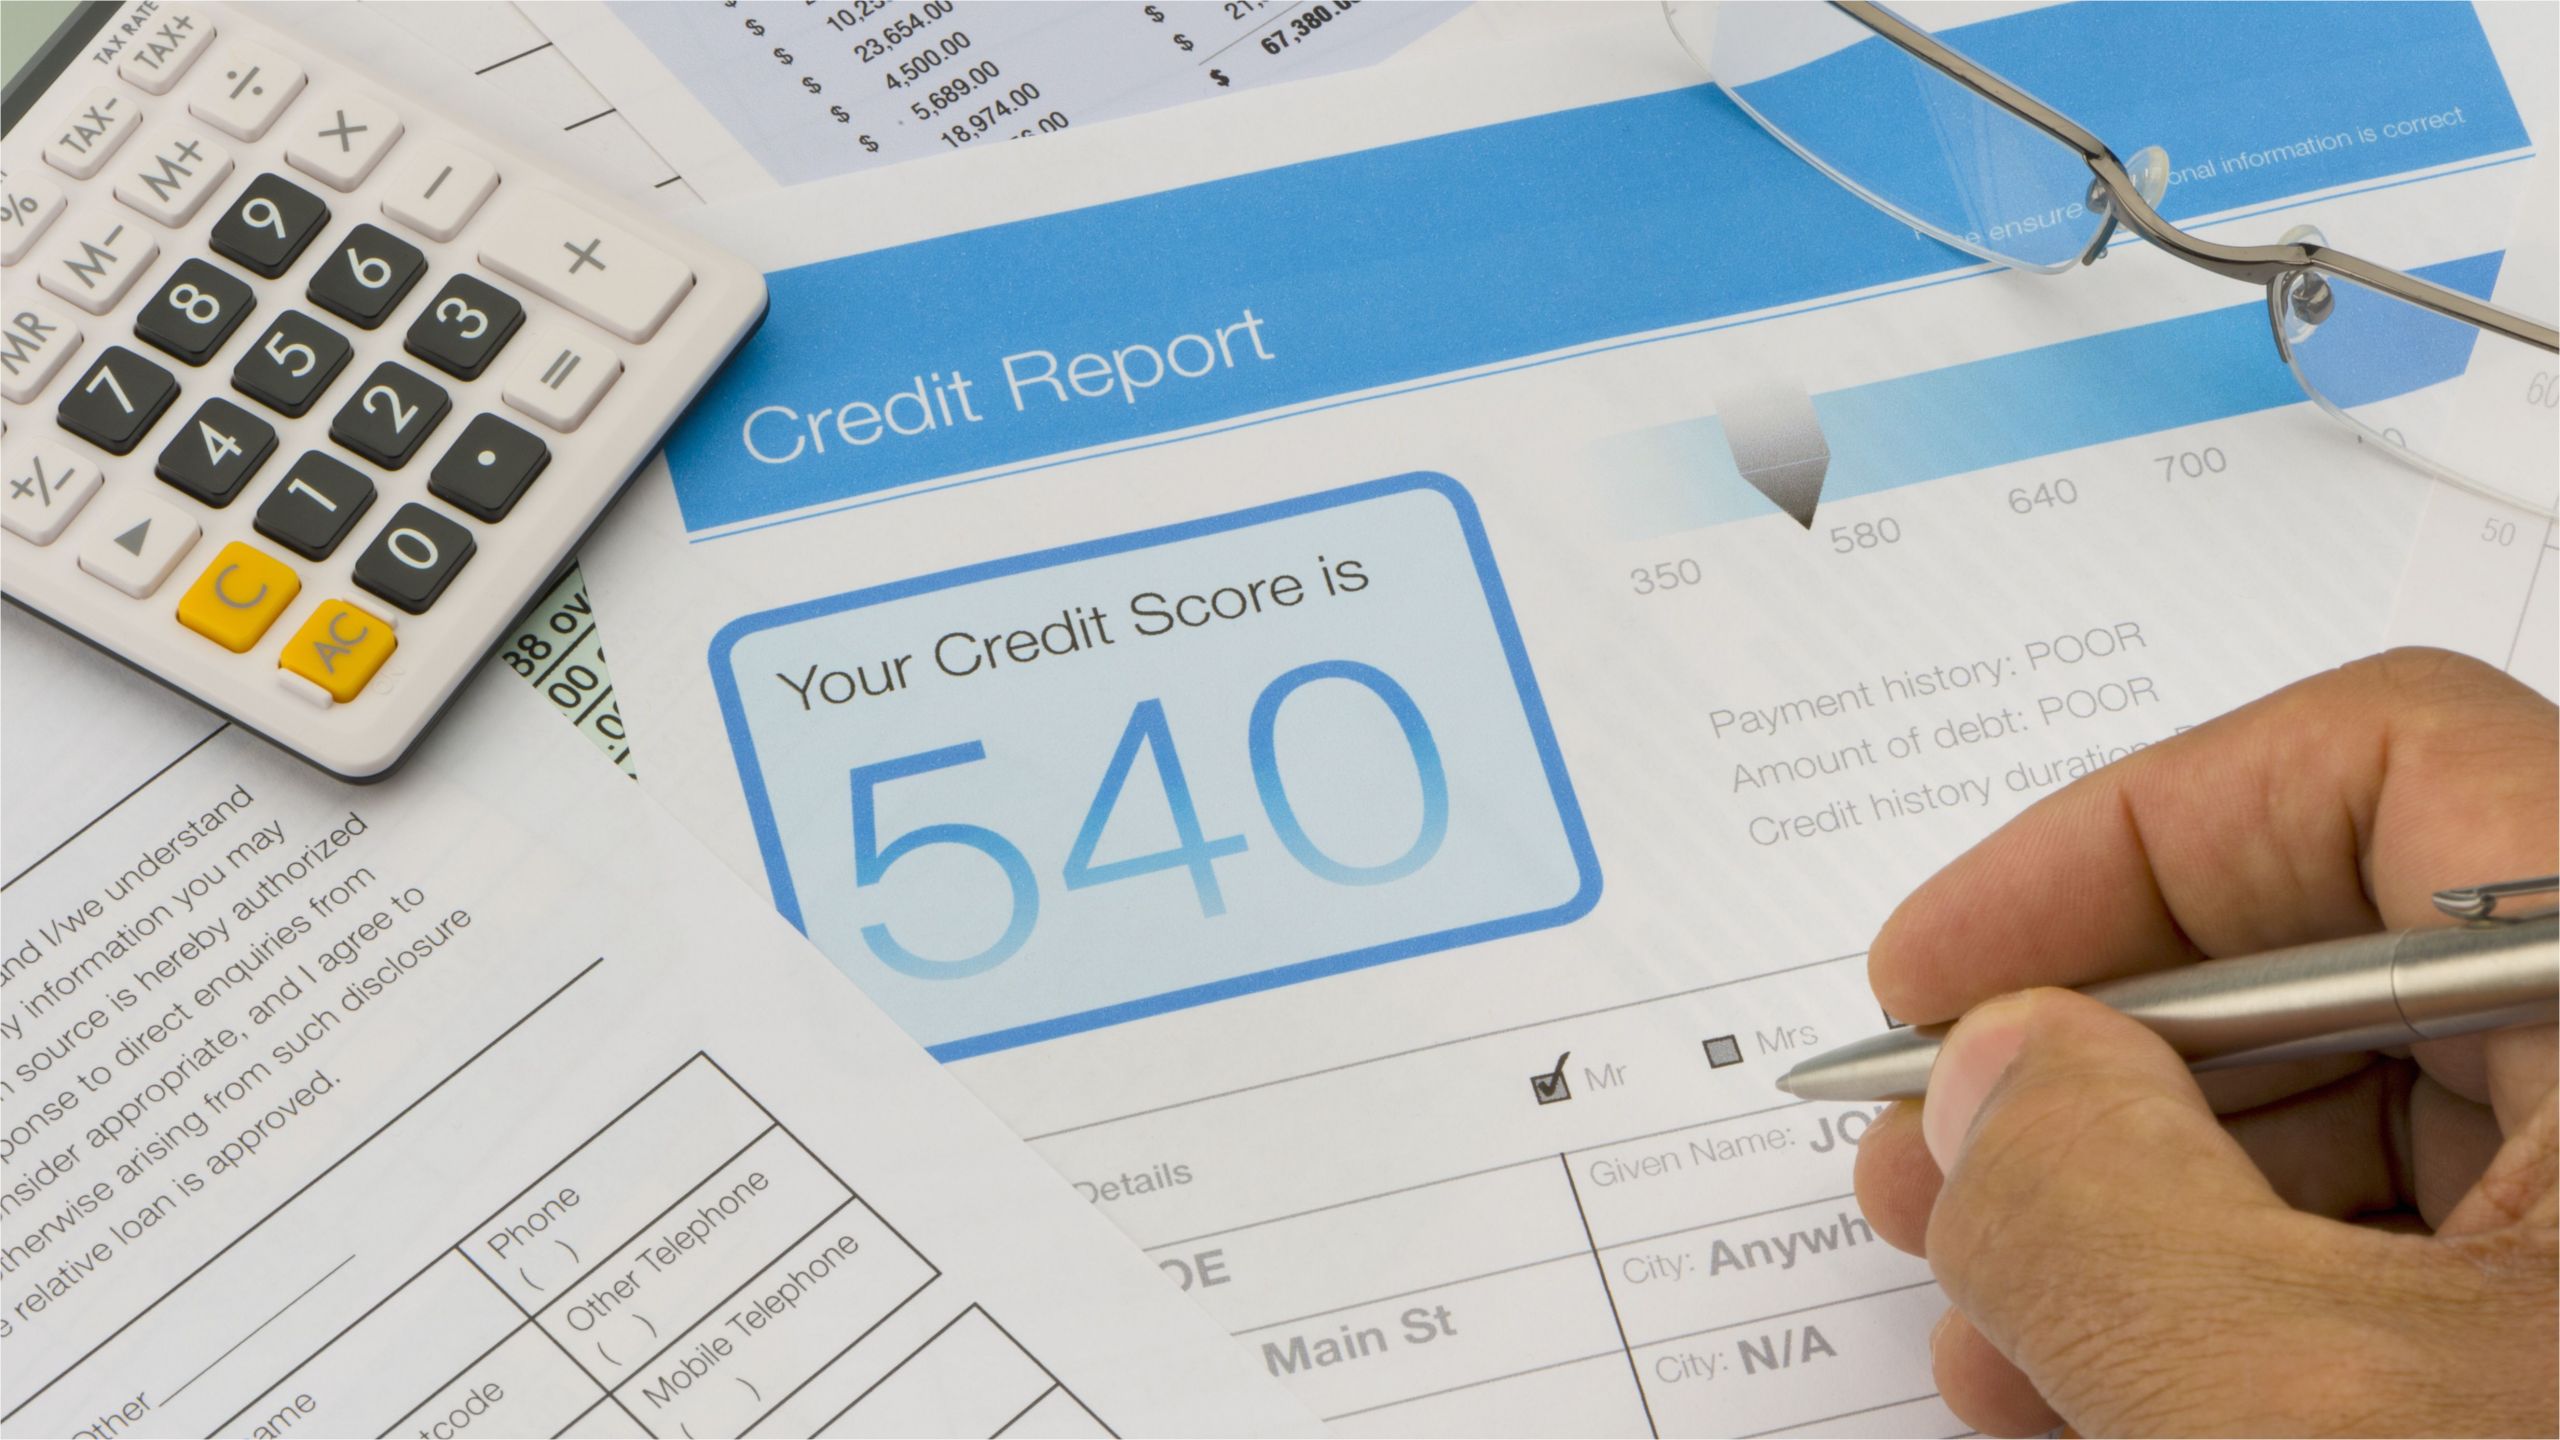 credit report form on a desk 643153146 59bc281922fa3a0011d499d9 jpg